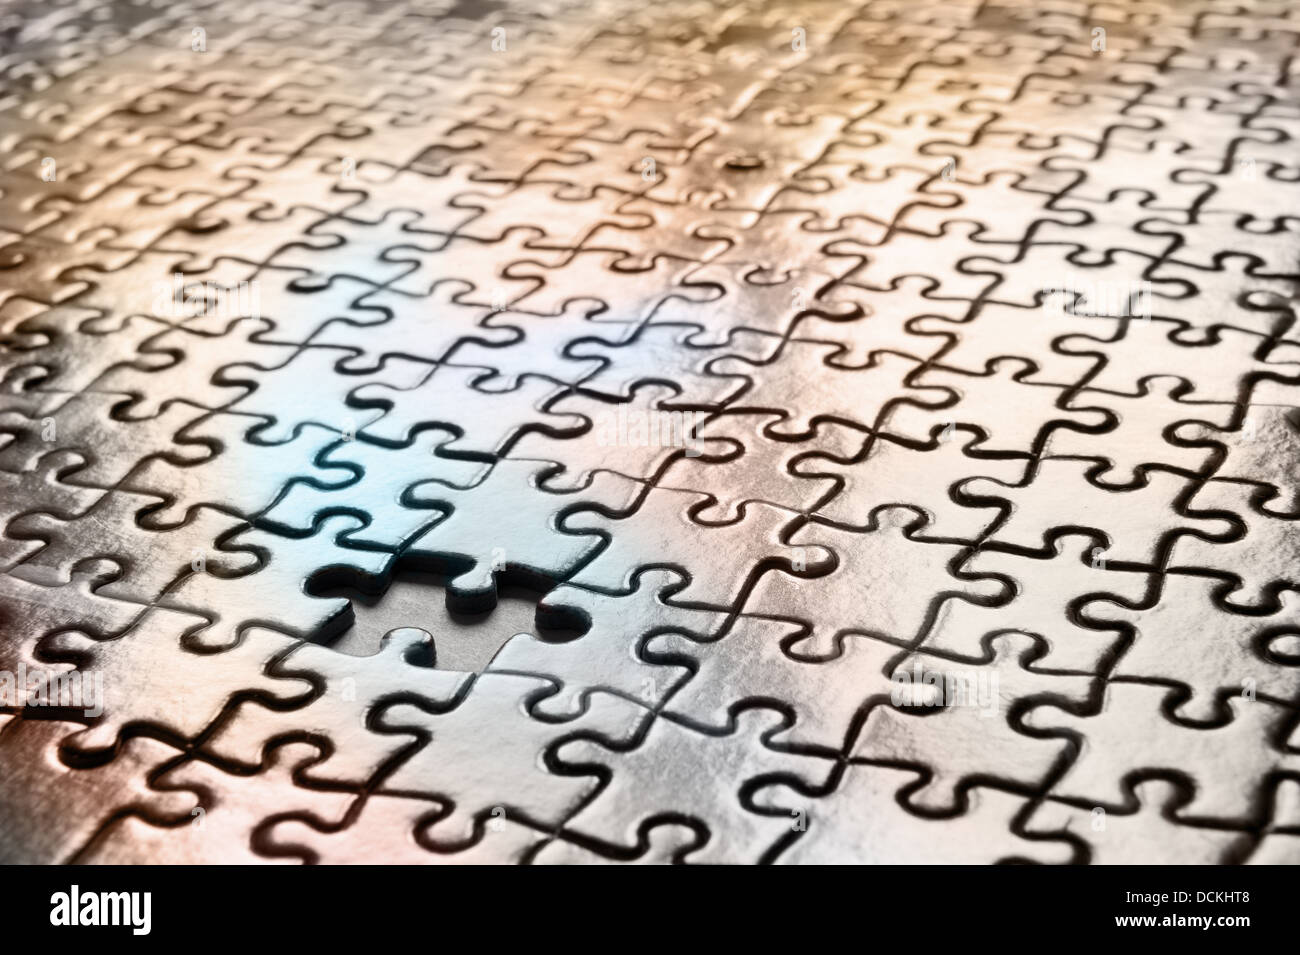 Puzzle pièces manquantes d'enclenchement de modèle pour résoudre ensemble engrené dans un résultat correct comme chaque pièce une forme unique Banque D'Images